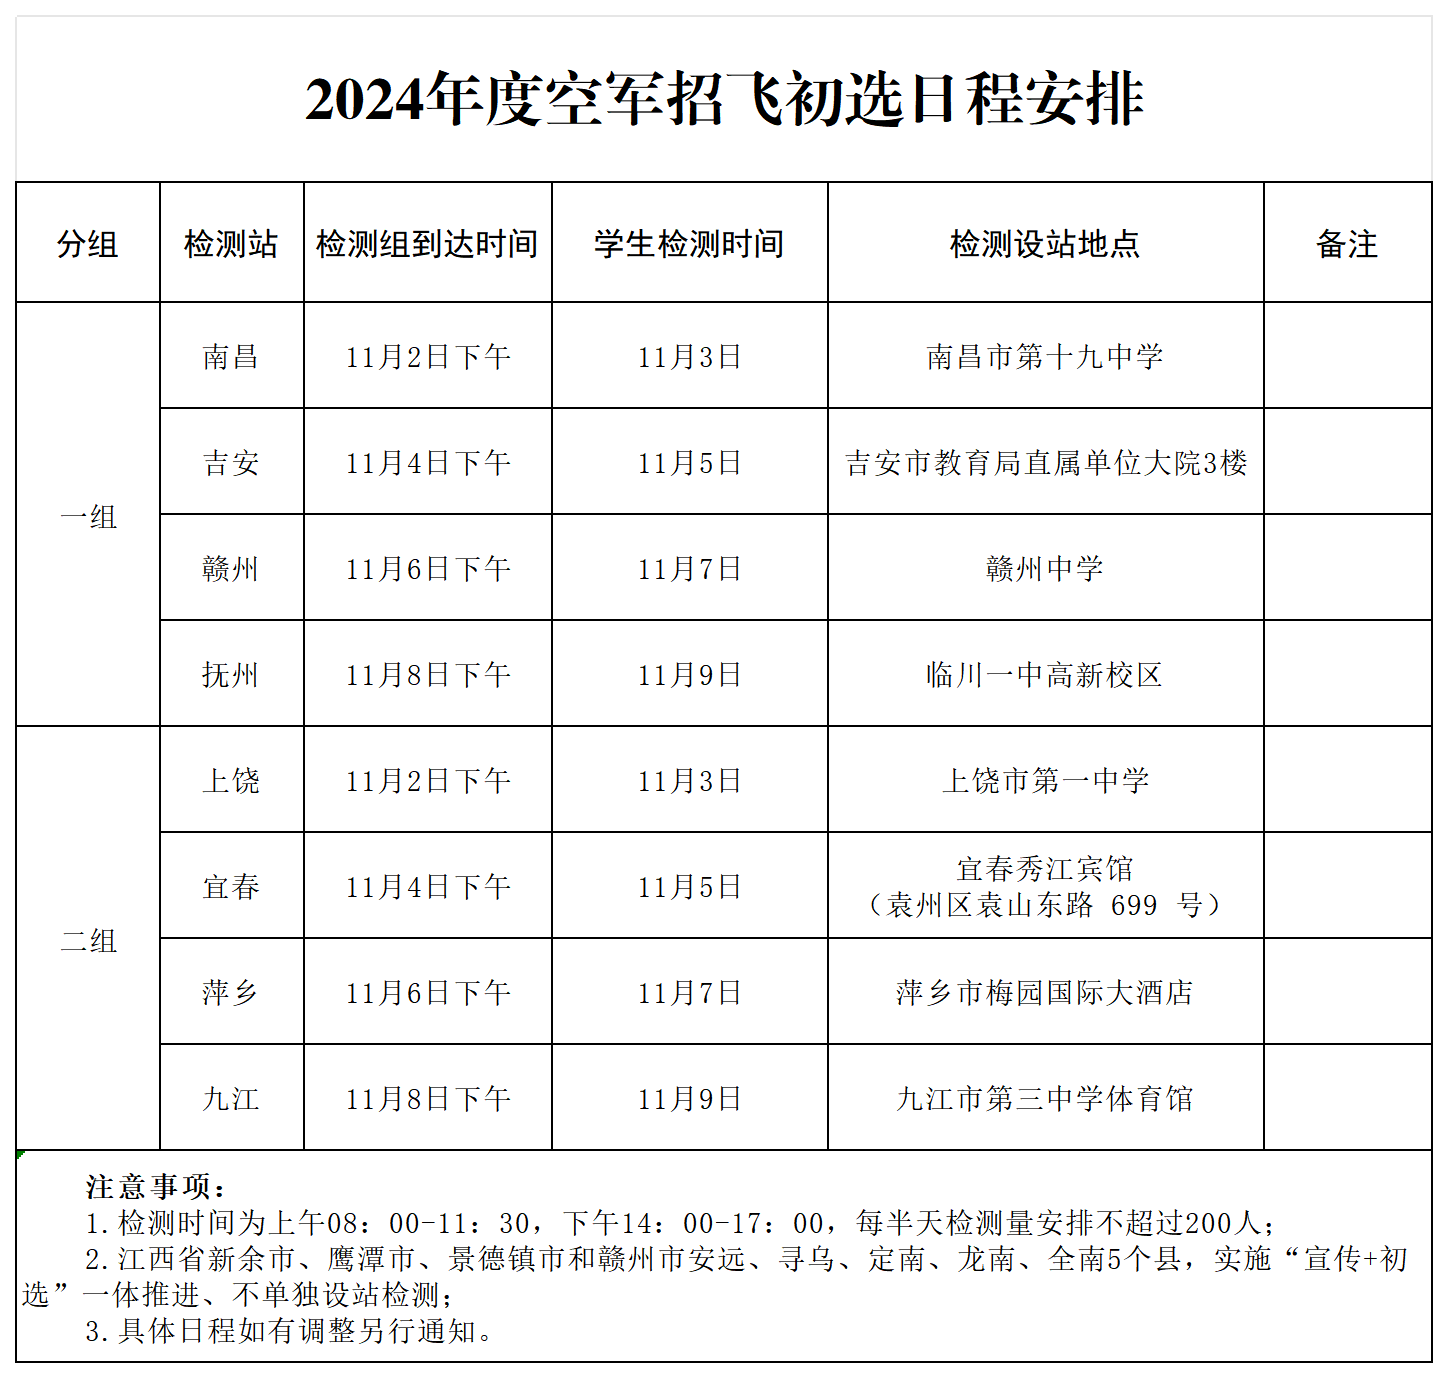 2024年度江西省空军招飞初选日程安排